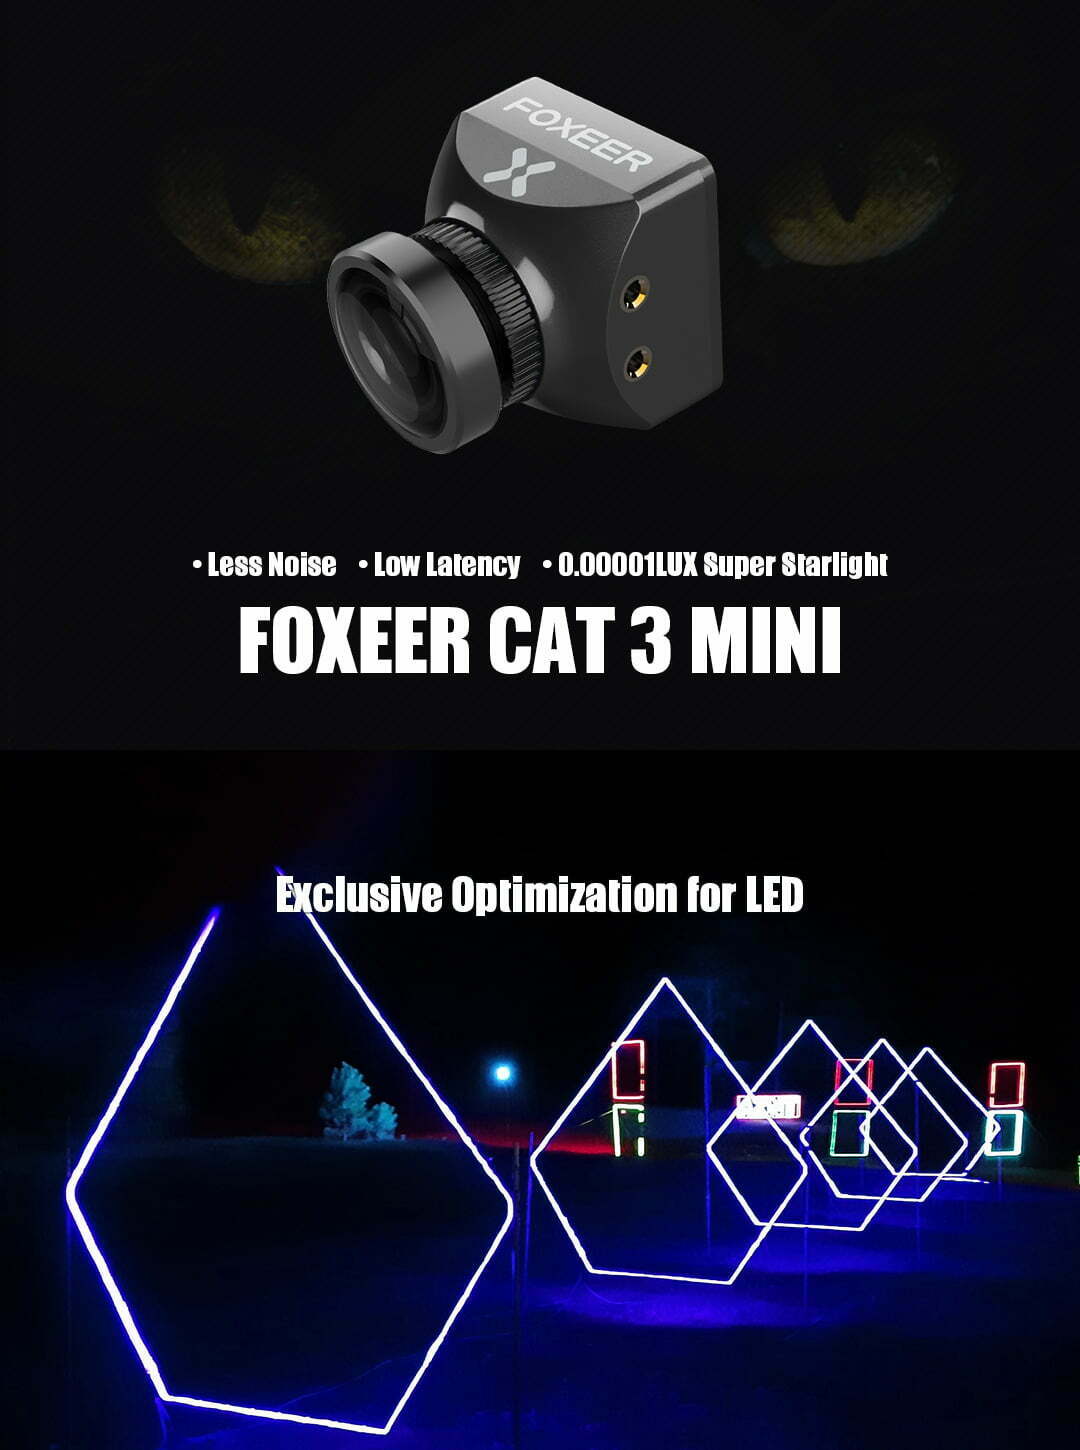 foxeer mini cat 3 1200tvl 0 00001lux starlight fpv camera mantisfpv description 01